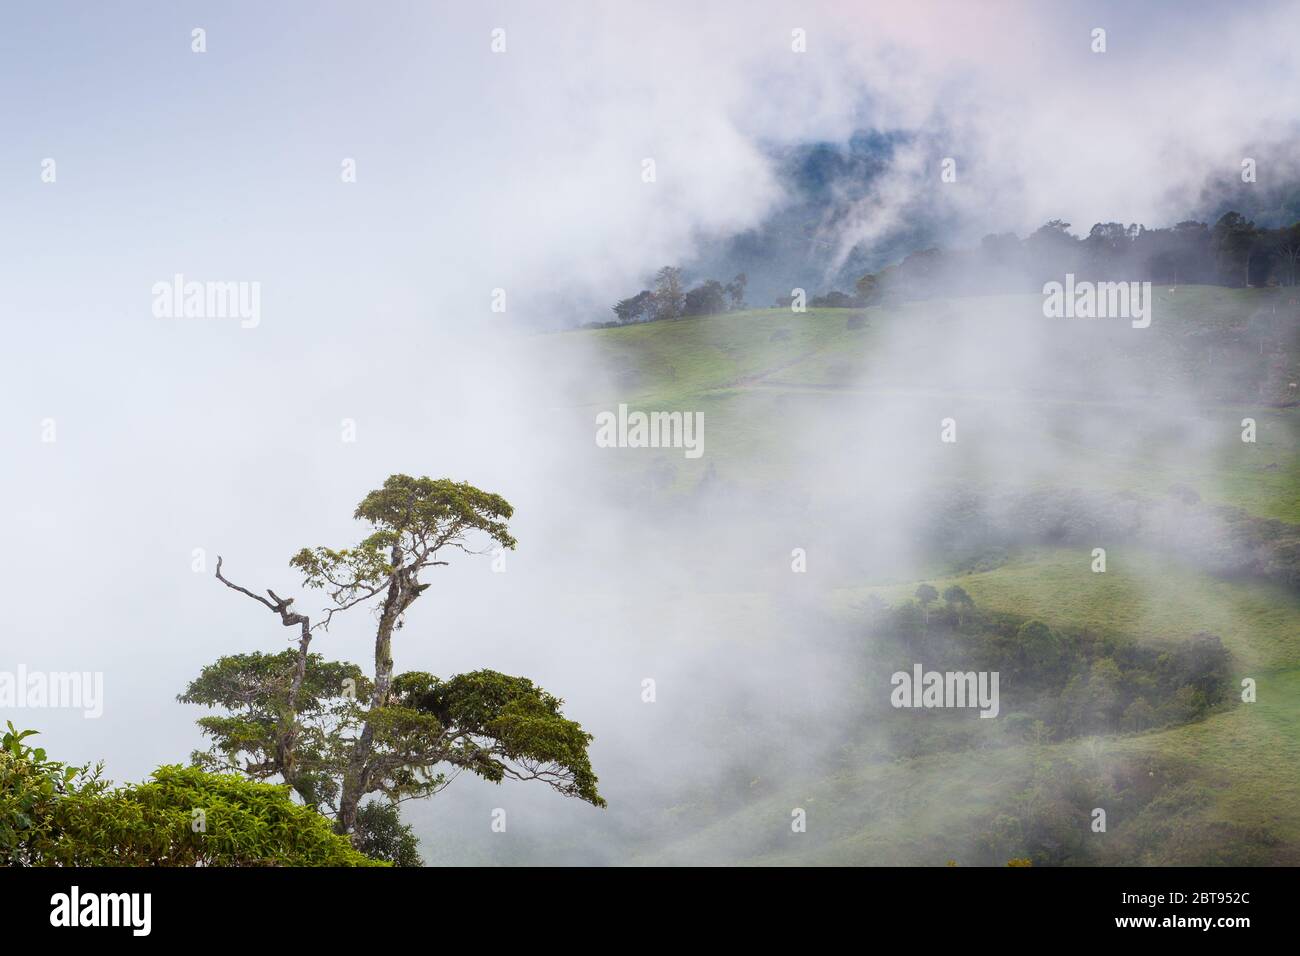 Serata mistosa in terreni agricoli tra Rio Sereno e il comune di Volcan, provincia di Chiriqui, Repubblica di Panama. Foto Stock